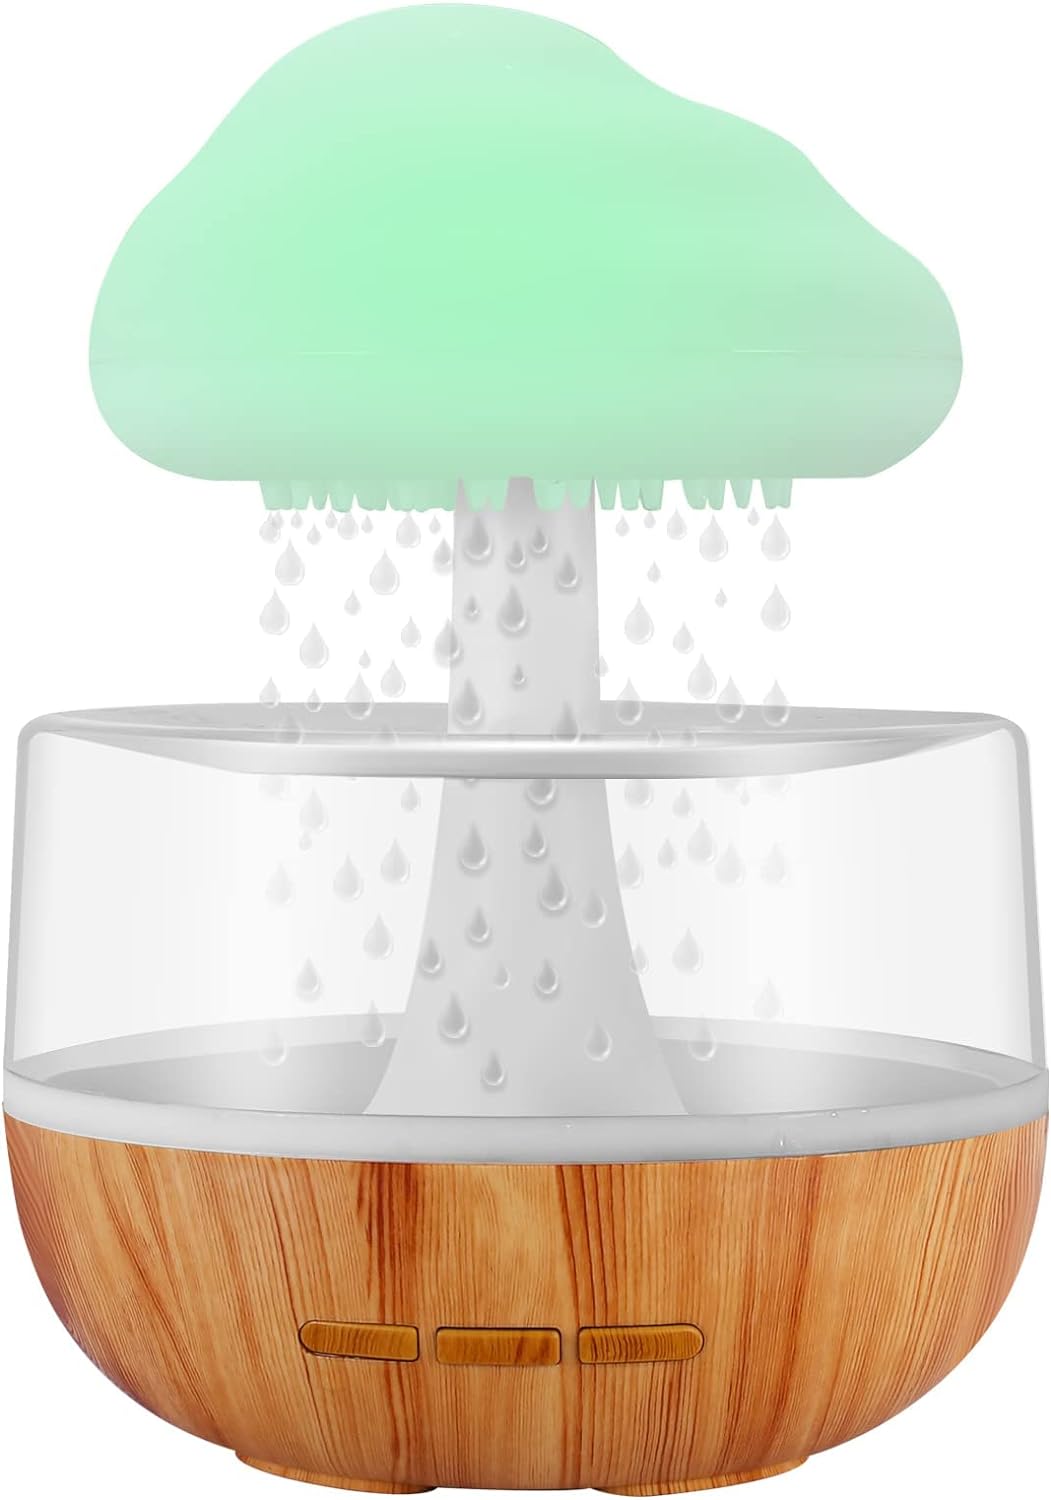 Cloud Rain Humidifier